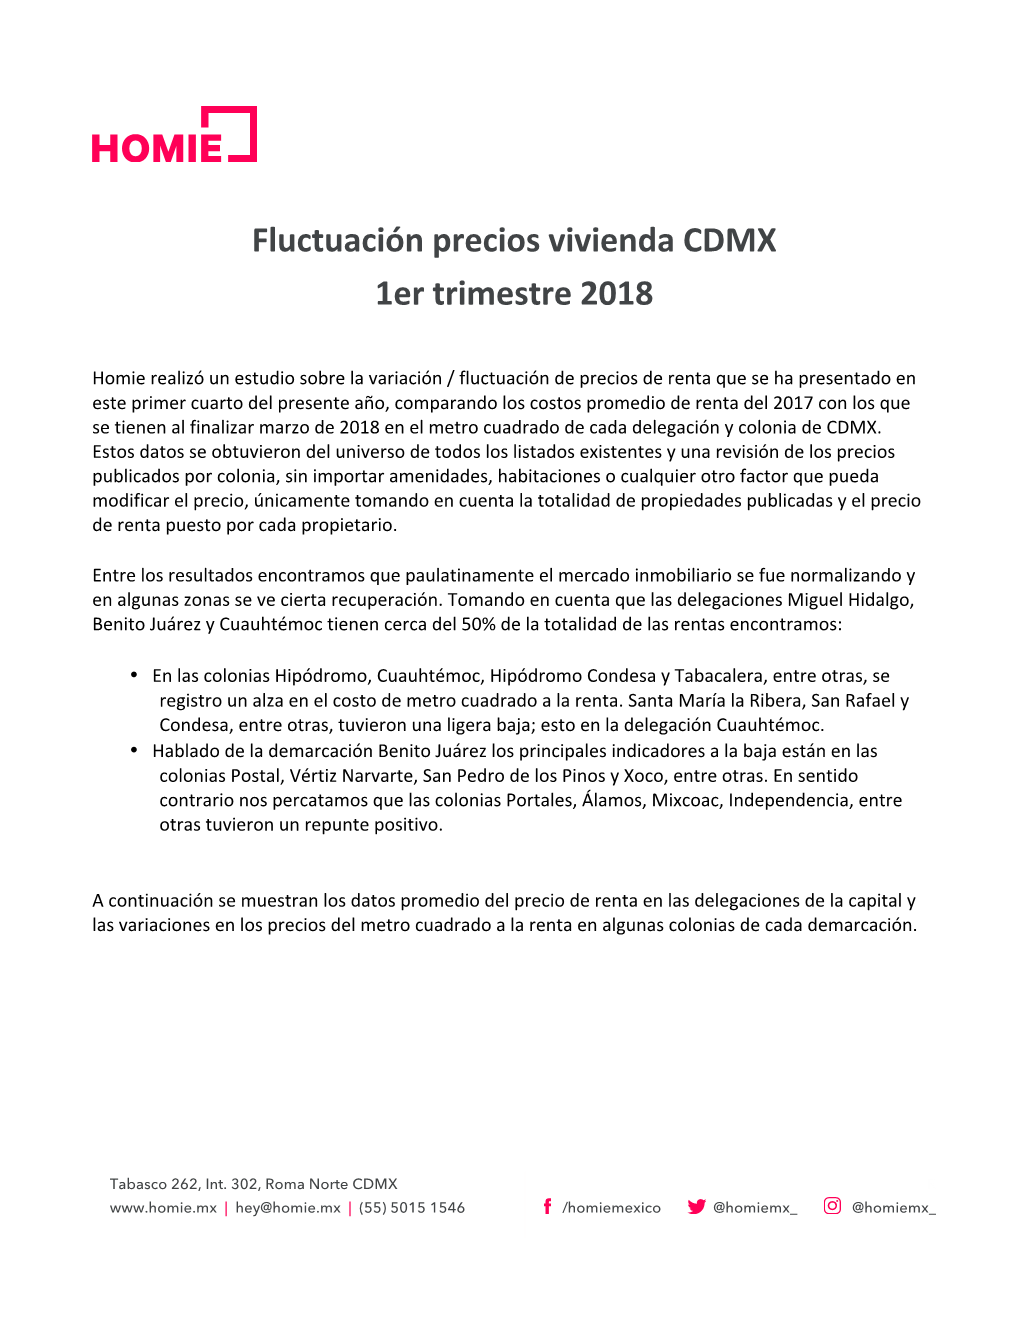 Fluctuación Precios Vivienda CDMX 1Er Trimestre 2018